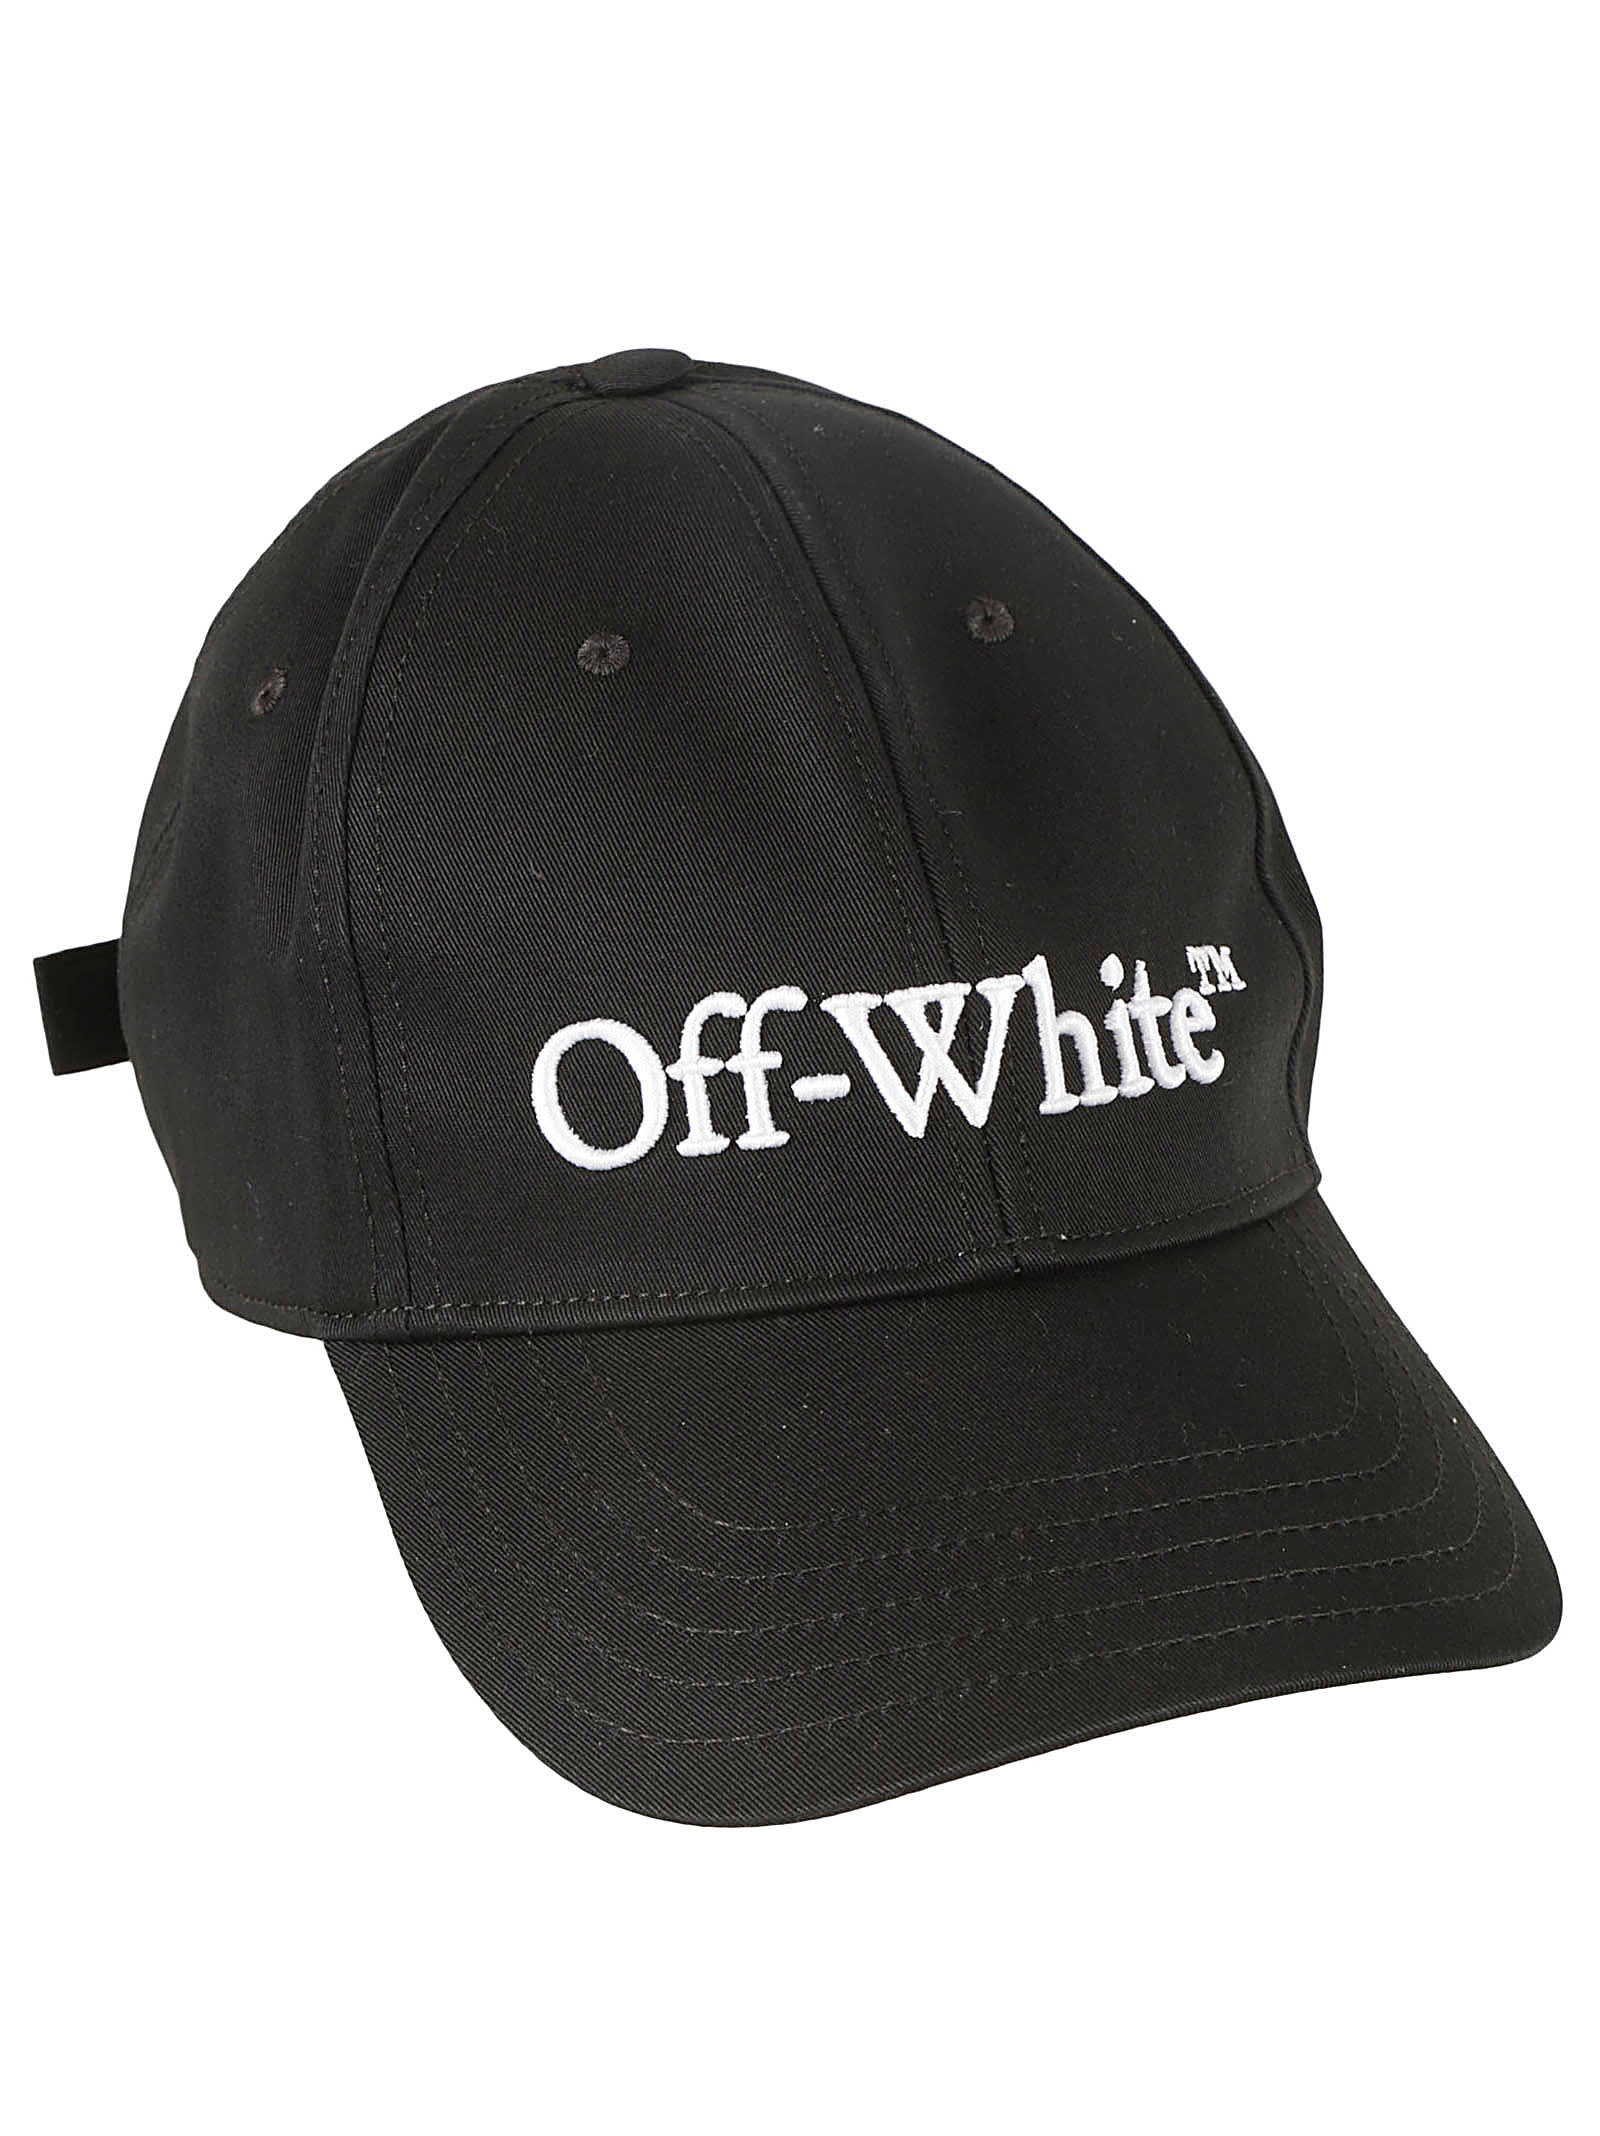 Off-white Drill Logo Bksh Baseball Cap In Black/white